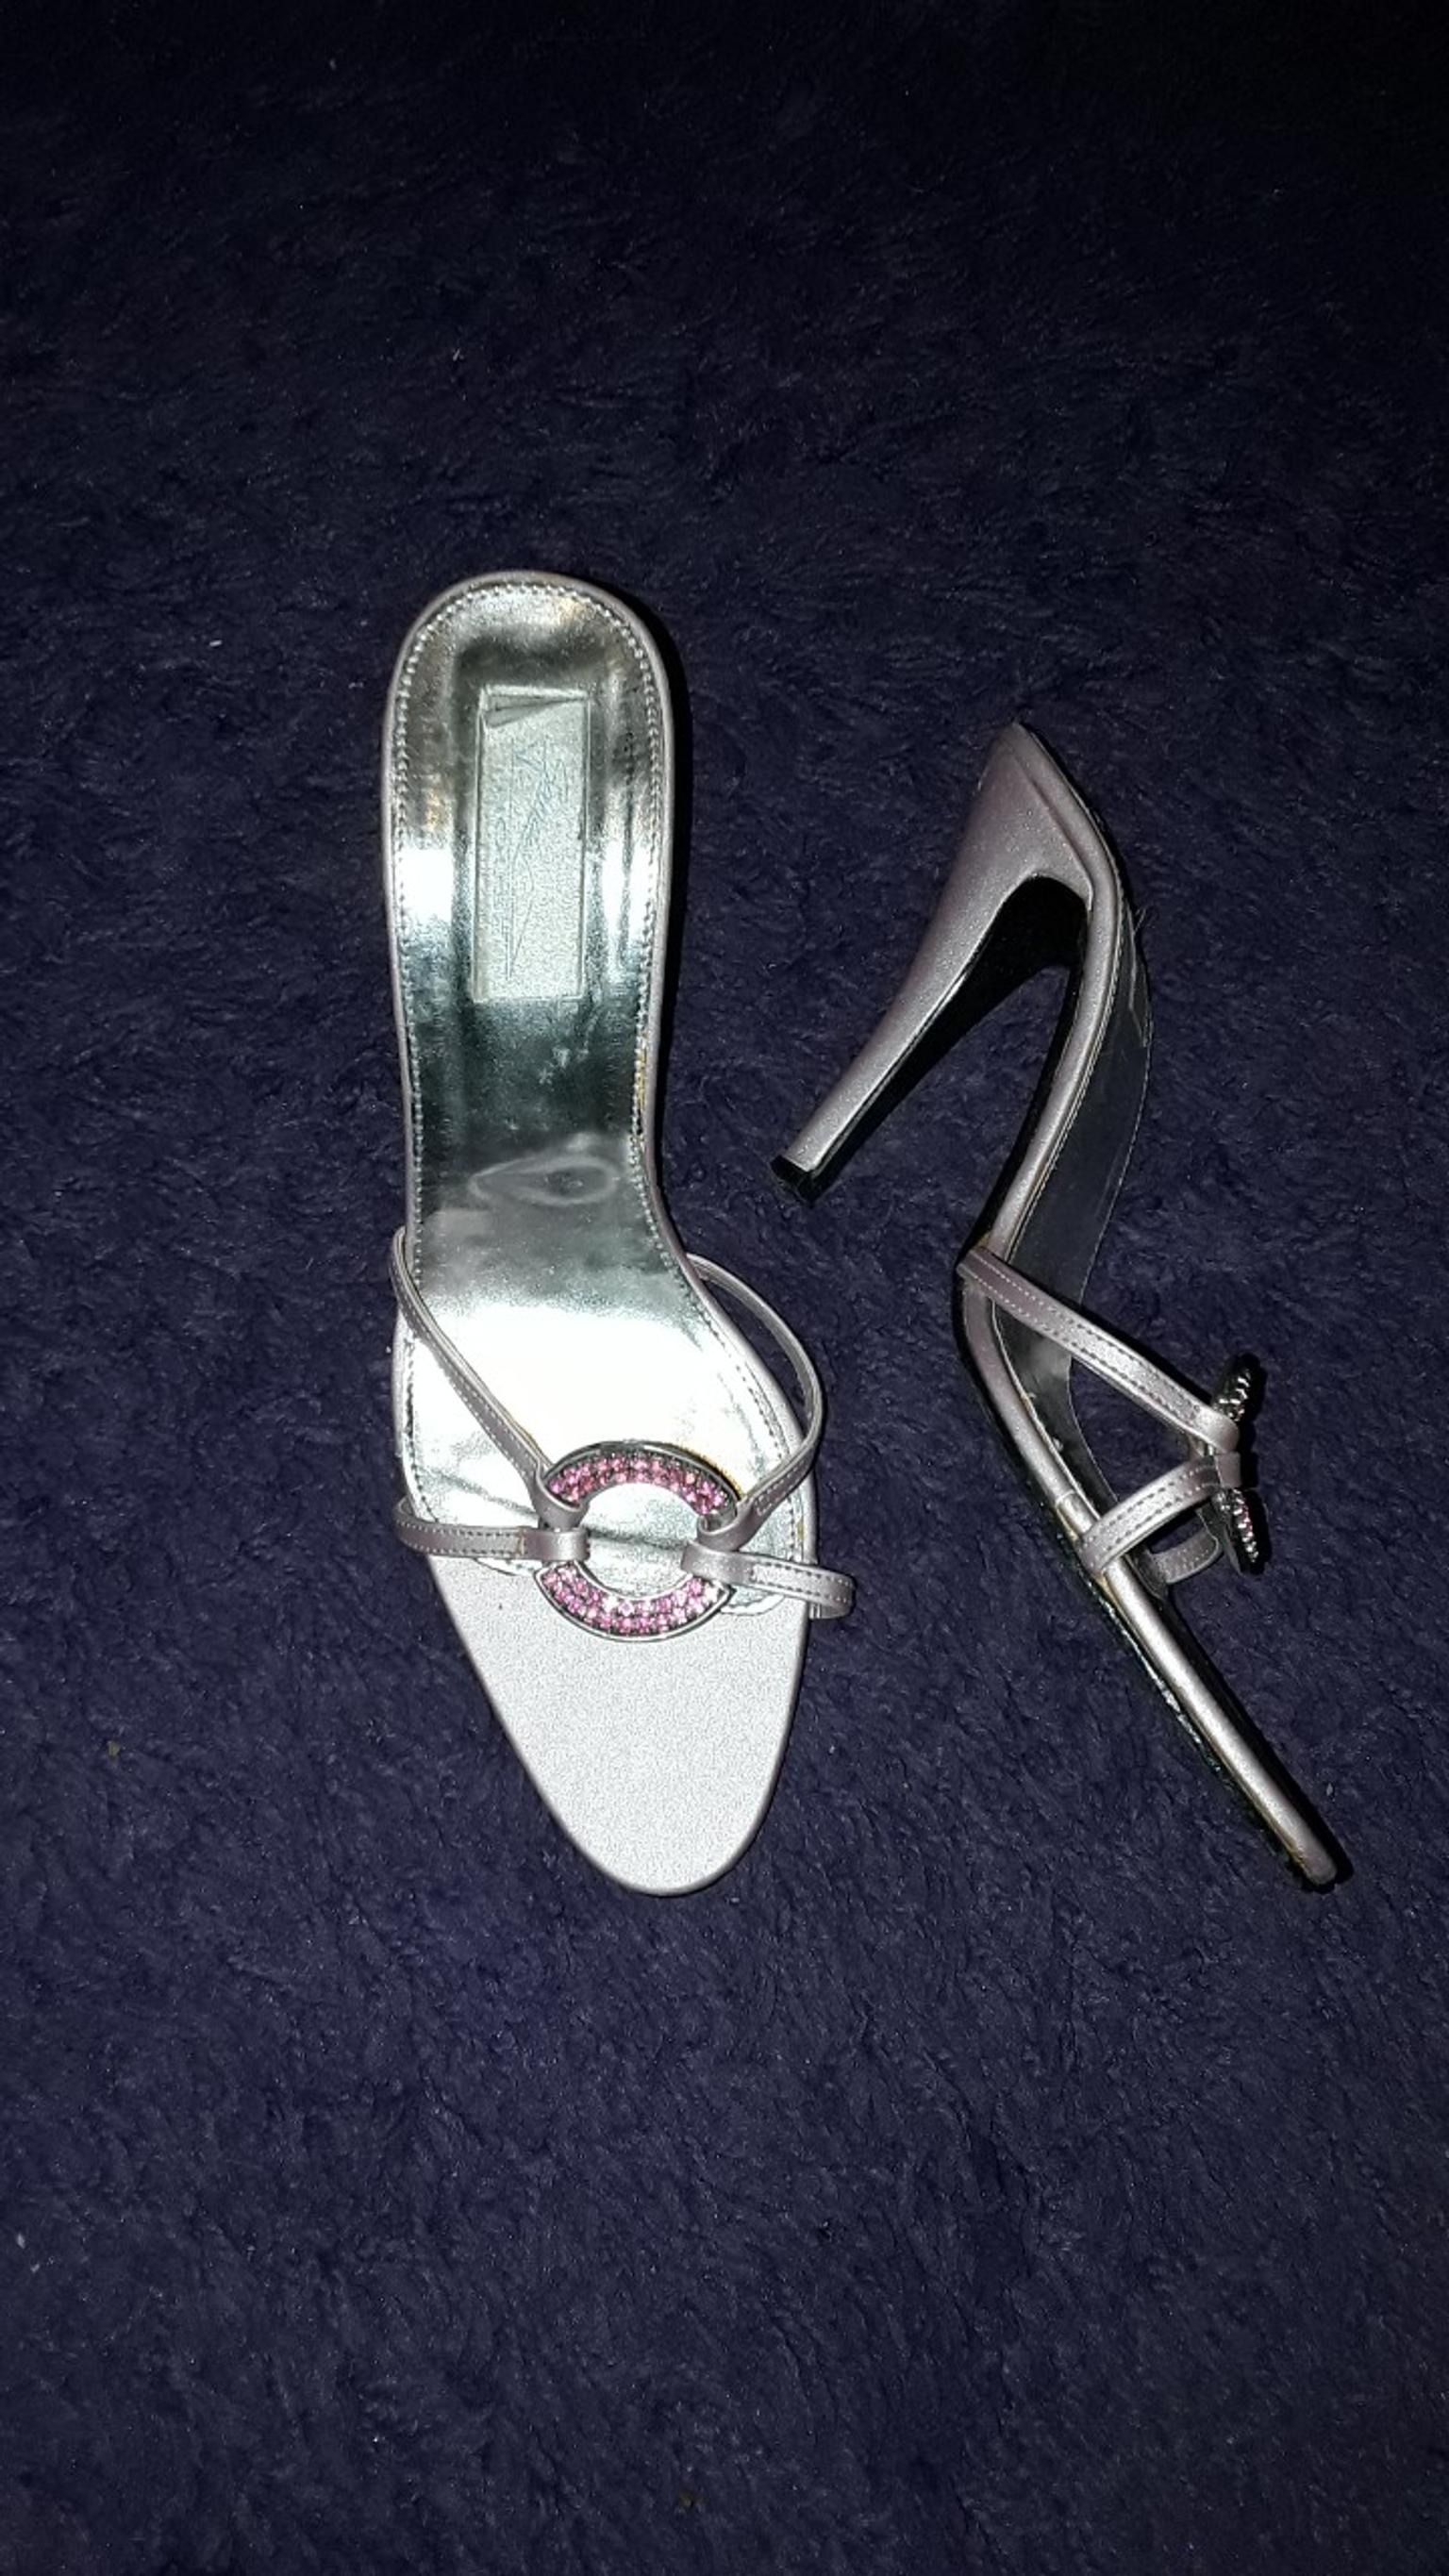 backless heeled shoes